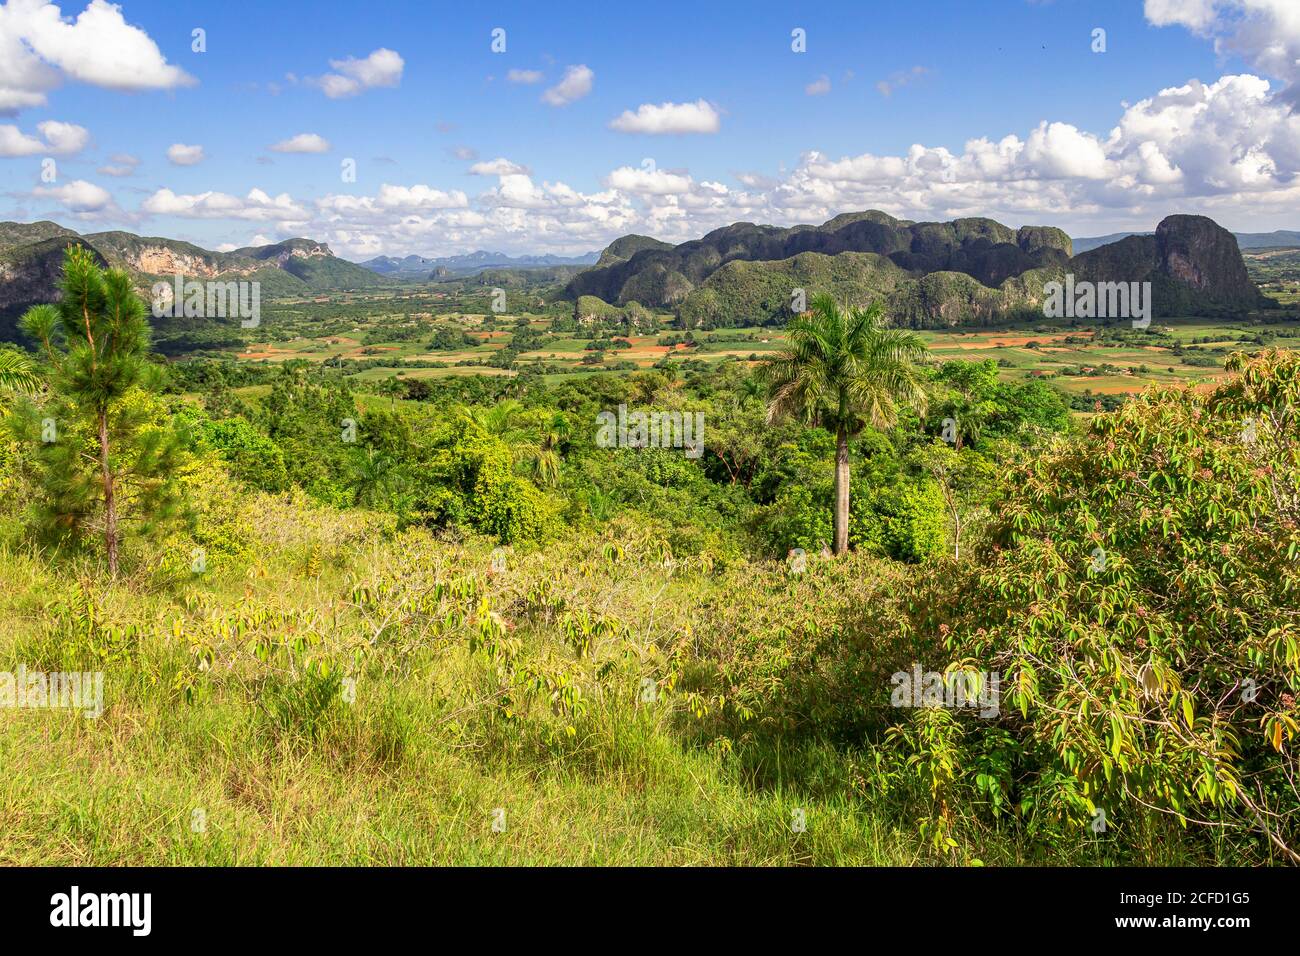 Vista desde el mirador de los Aquáticos sobre el valle de Vinales (Valle de Vinales), provincia de Pinar del Río, Cuba Foto de stock